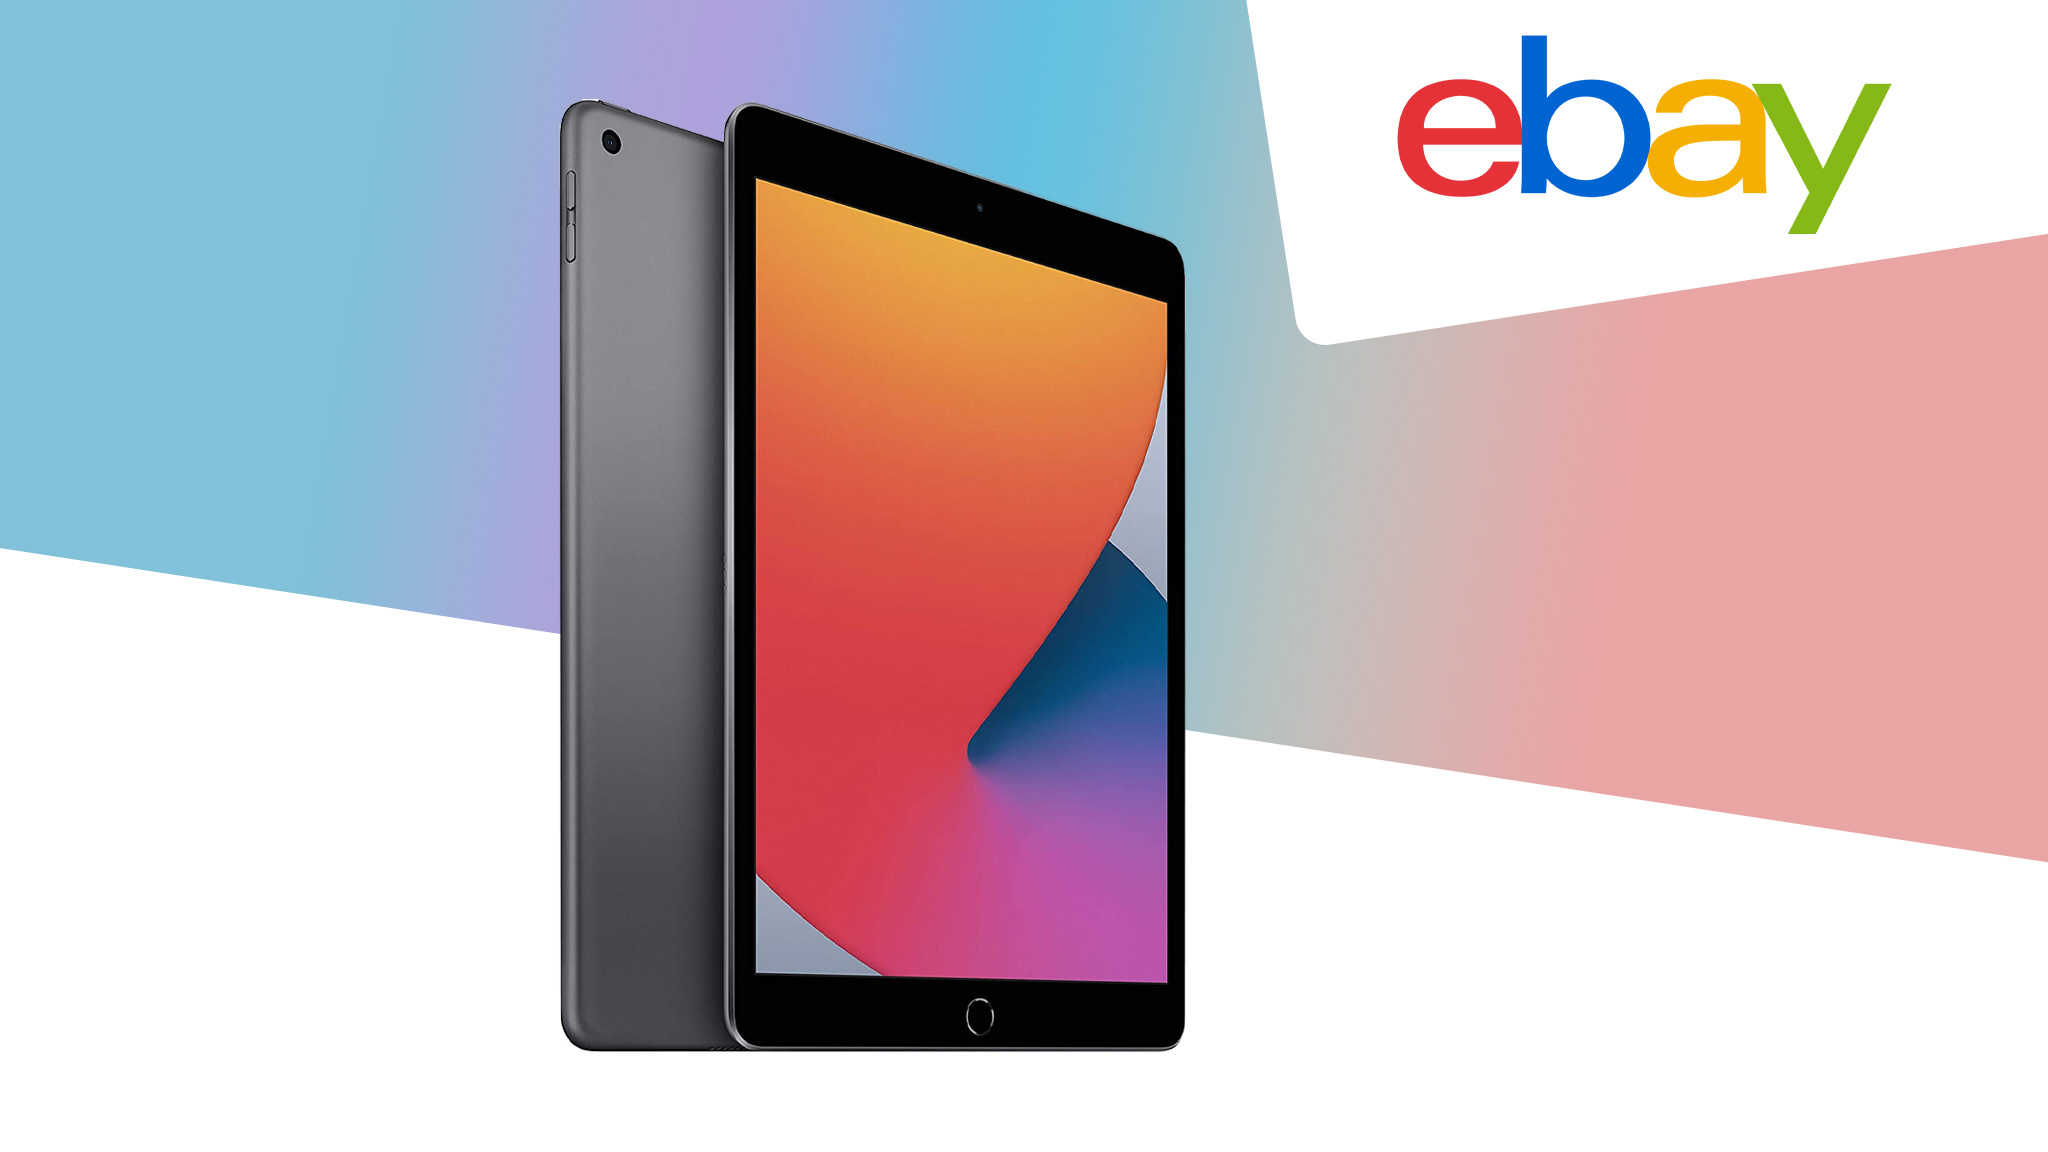 Apple-Tablet im Ebay-Angebot: iPad der 8. Generation (2020) über 50 Euro günstiger!